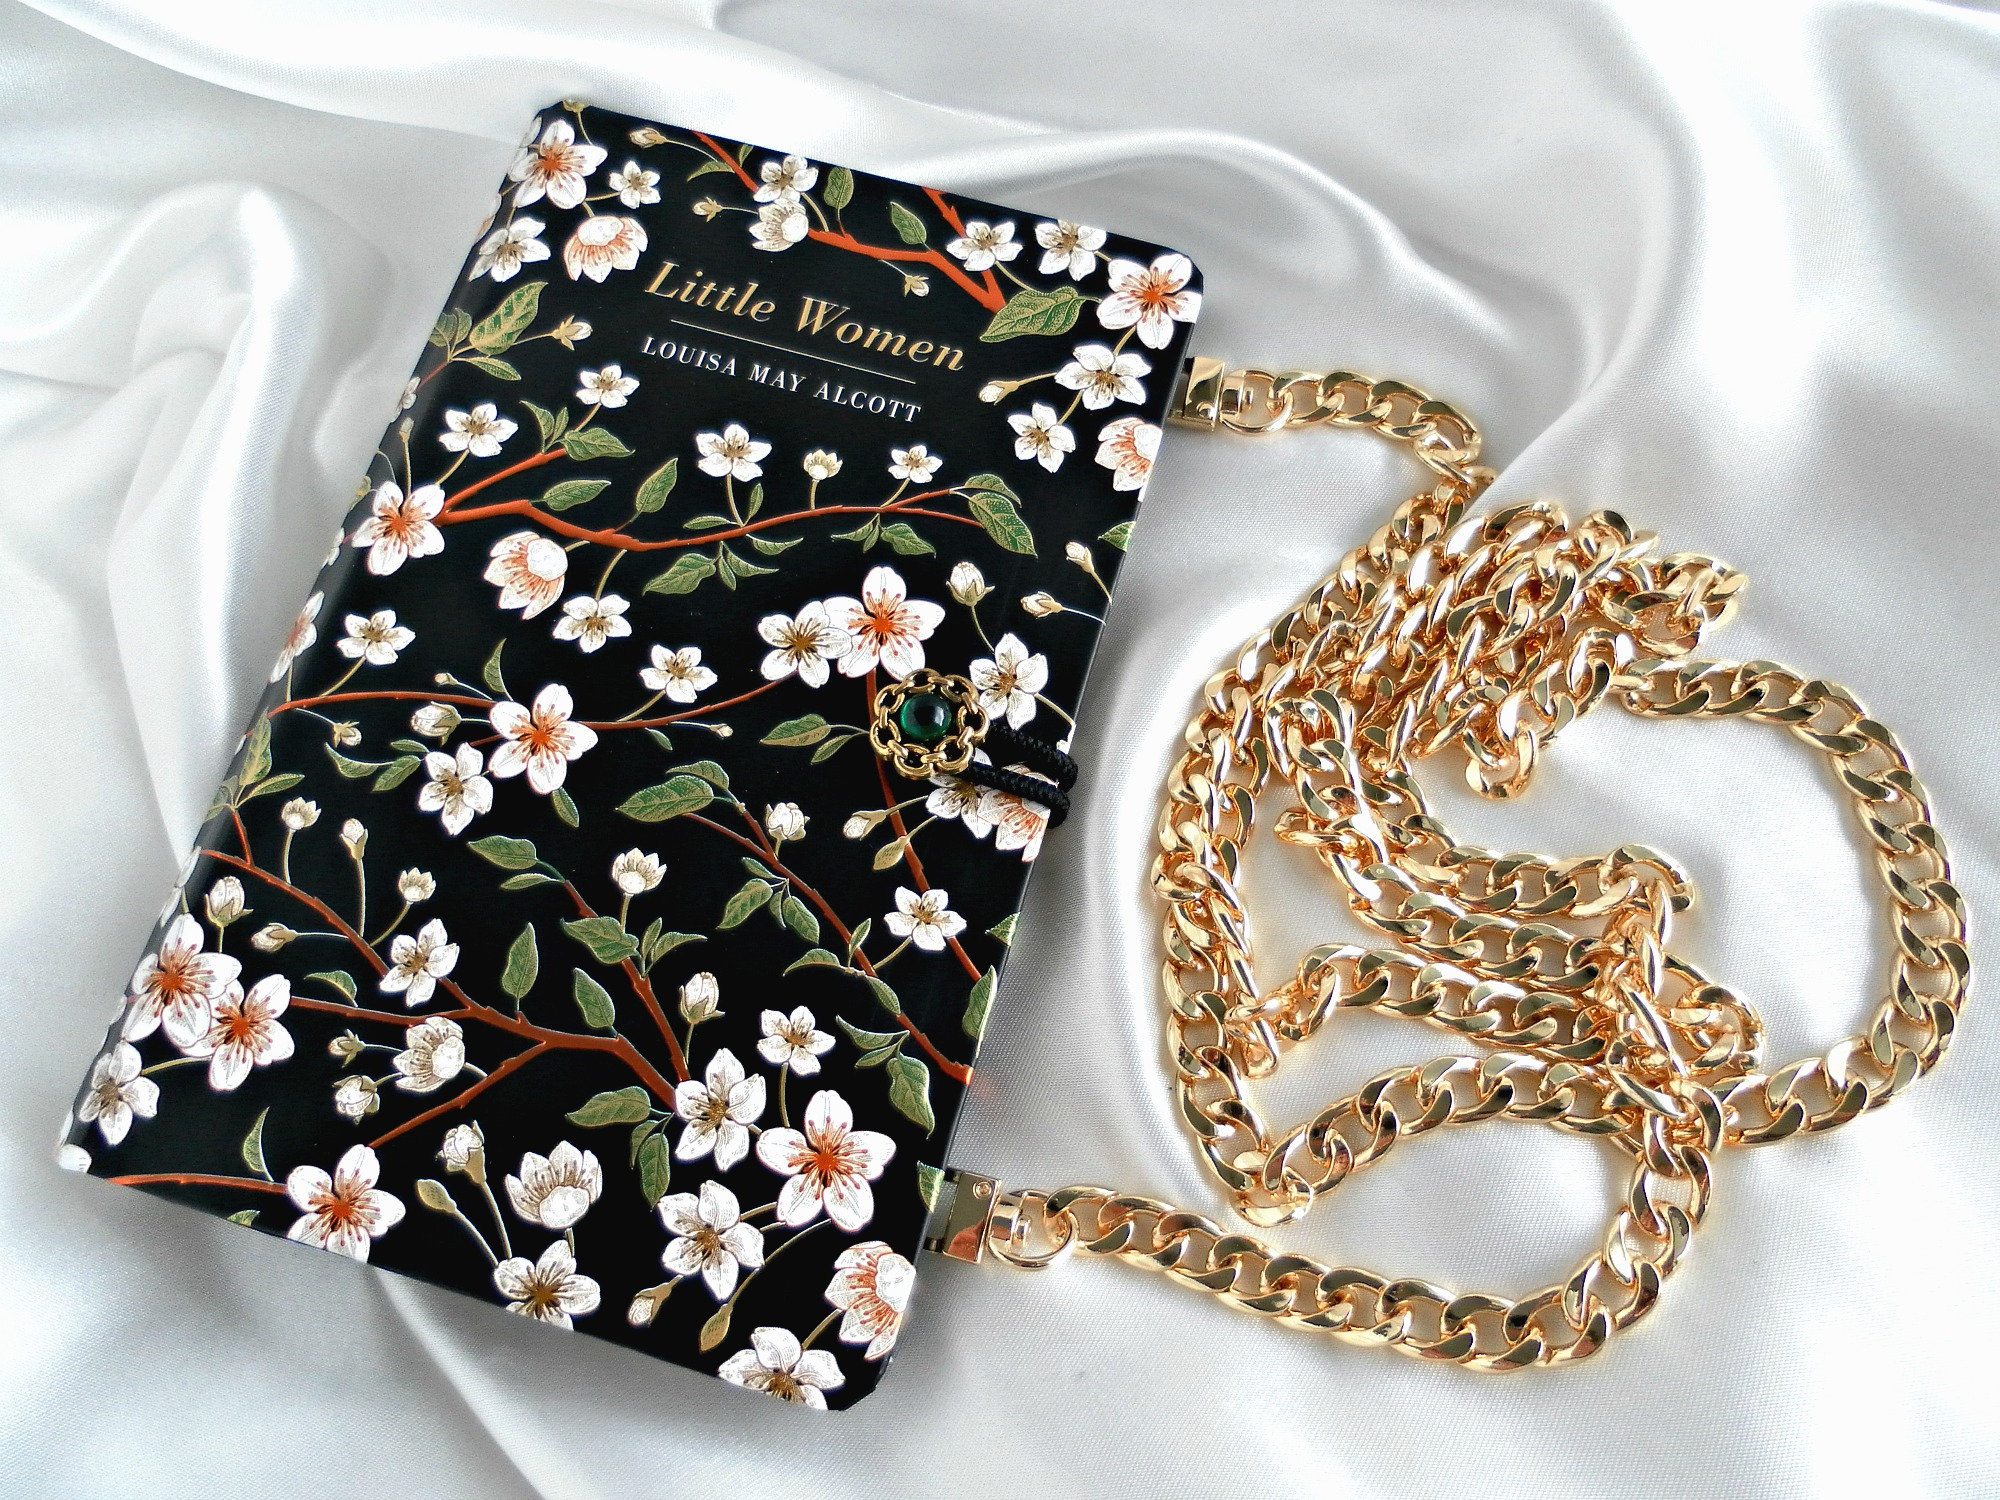 Book Purse, Little Women Gifts, Book Handbags, Bookworm Gifts